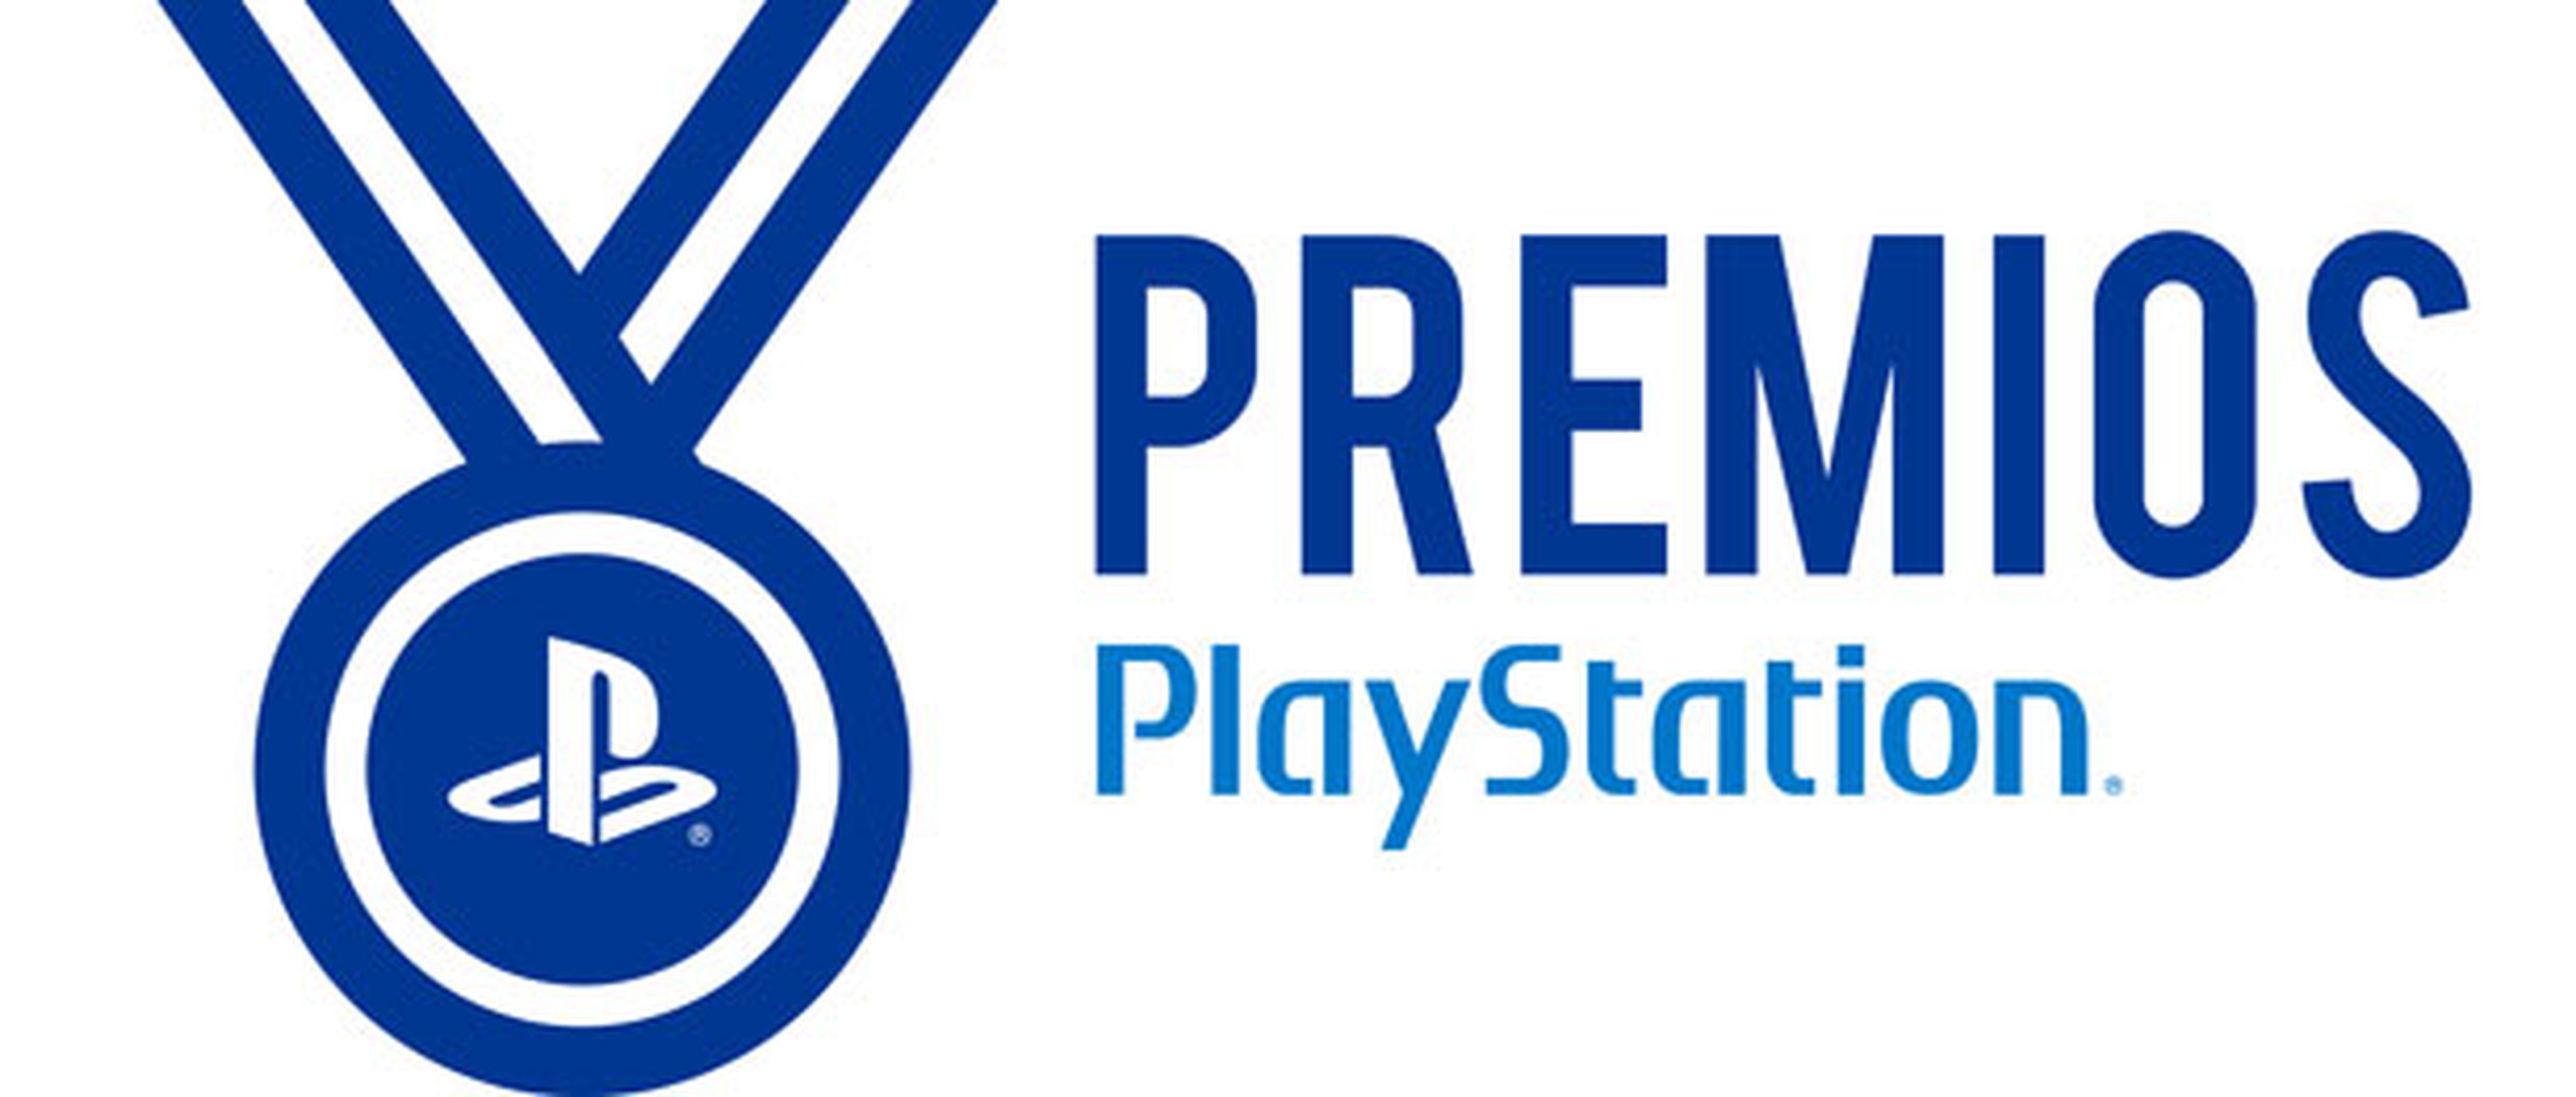 Ya está aquí la II Edición de los Premios PlayStation